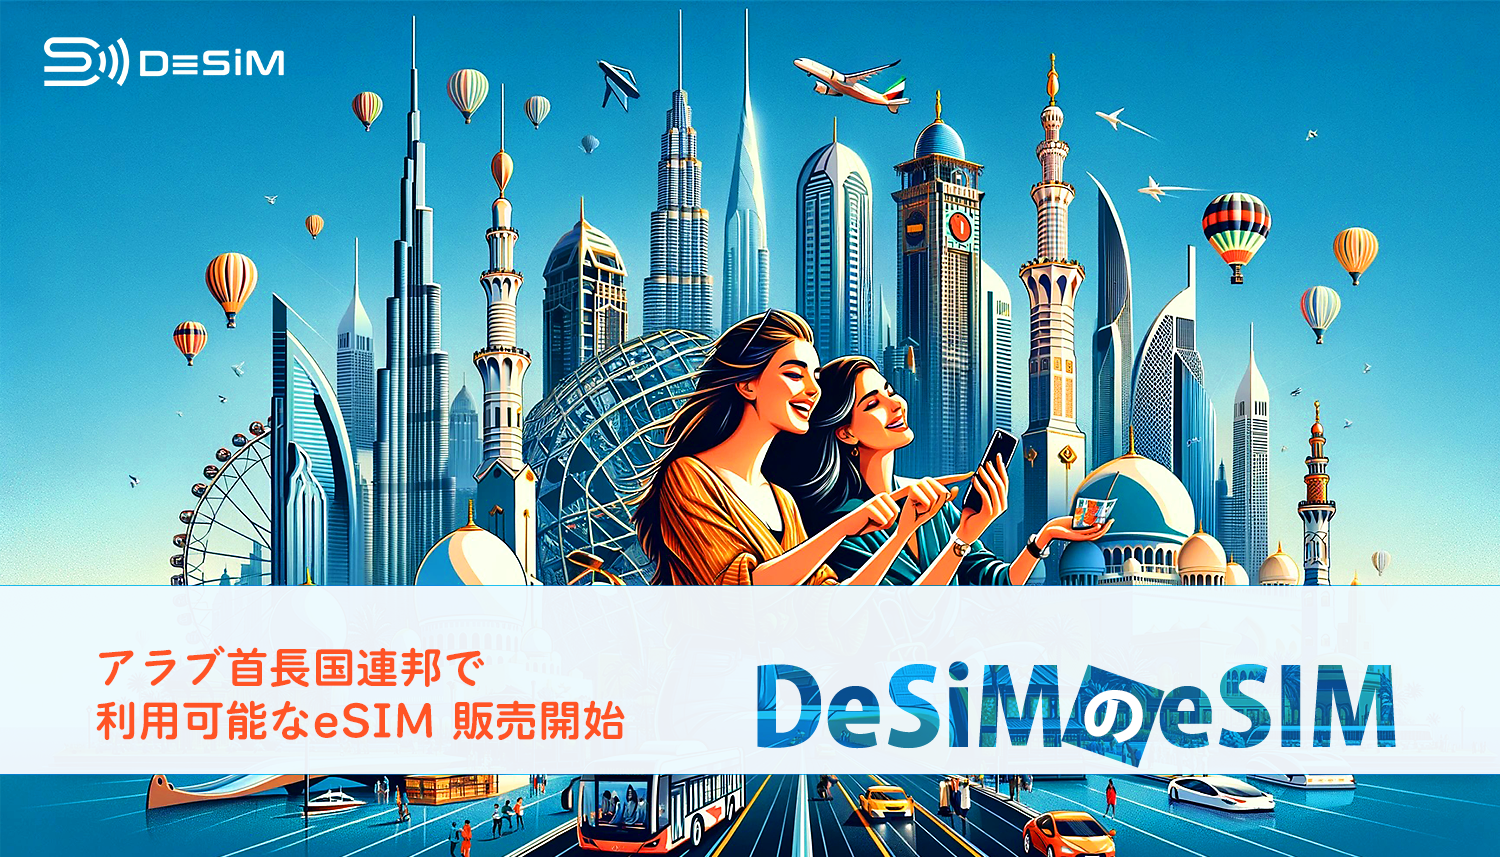 DeSiM、アラブ首長国連邦向けの新eSIMプランを発売！ドバイ滞在者に最適な10日間10GB、7日間5GBプランを提供